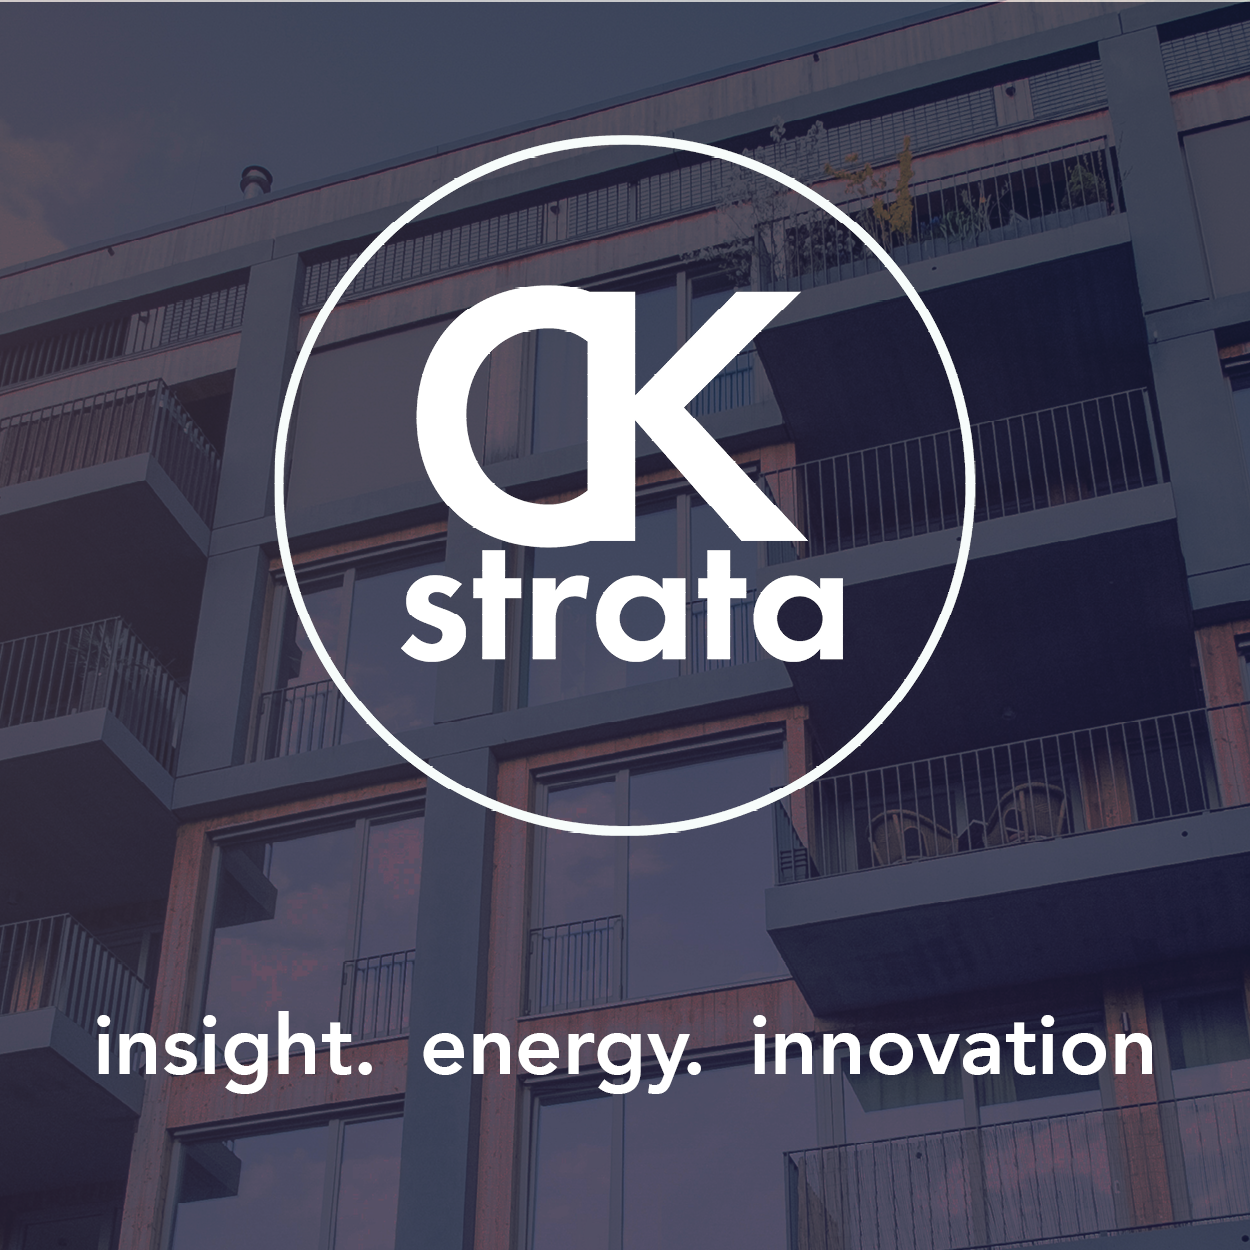 Introducing CK Strata